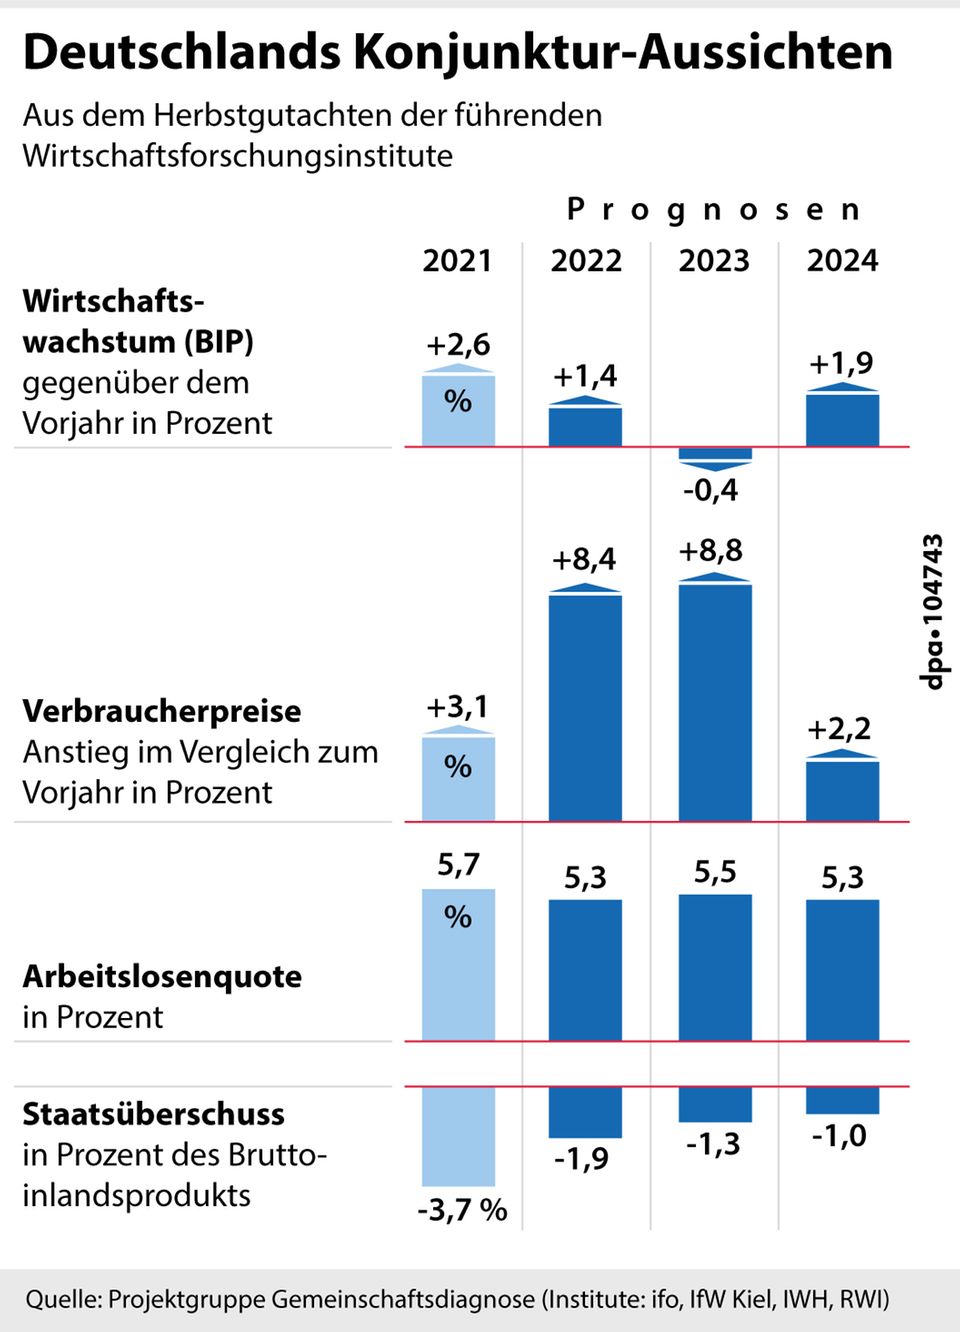 Eine Grafik zu Deutschlands Konjunktur-Aussichten für die Jahre 2021 - 2024